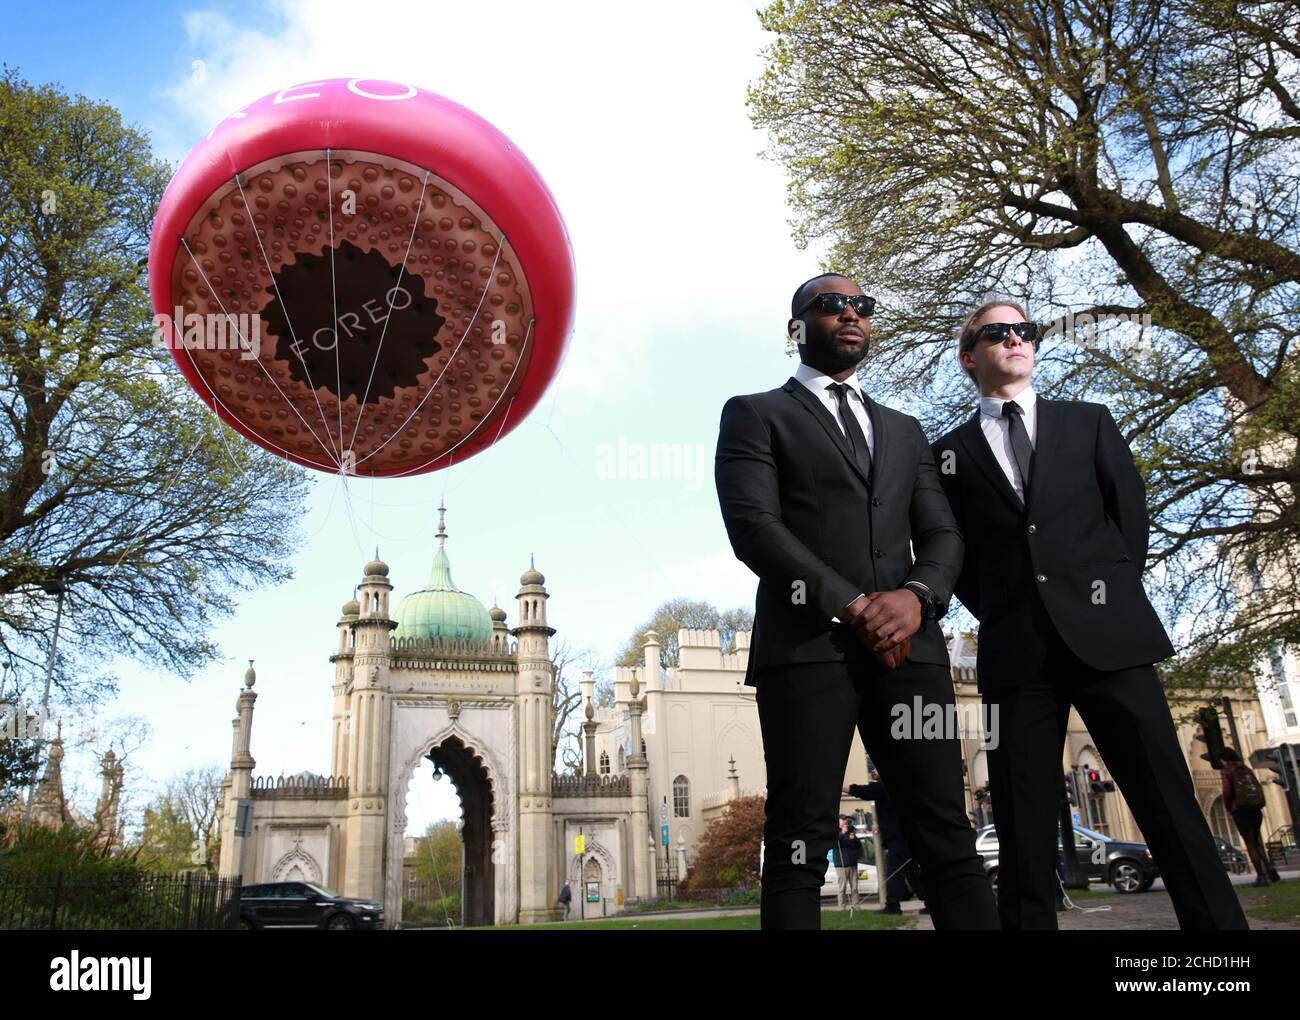 Une version gonflable de 5 mètres du nouvel OVNI FOREO, le premier masque intelligent au monde apparaît au Pavillon royal de Brighton pour célébrer aujourd'hui la Journée nationale des étrangers. Banque D'Images